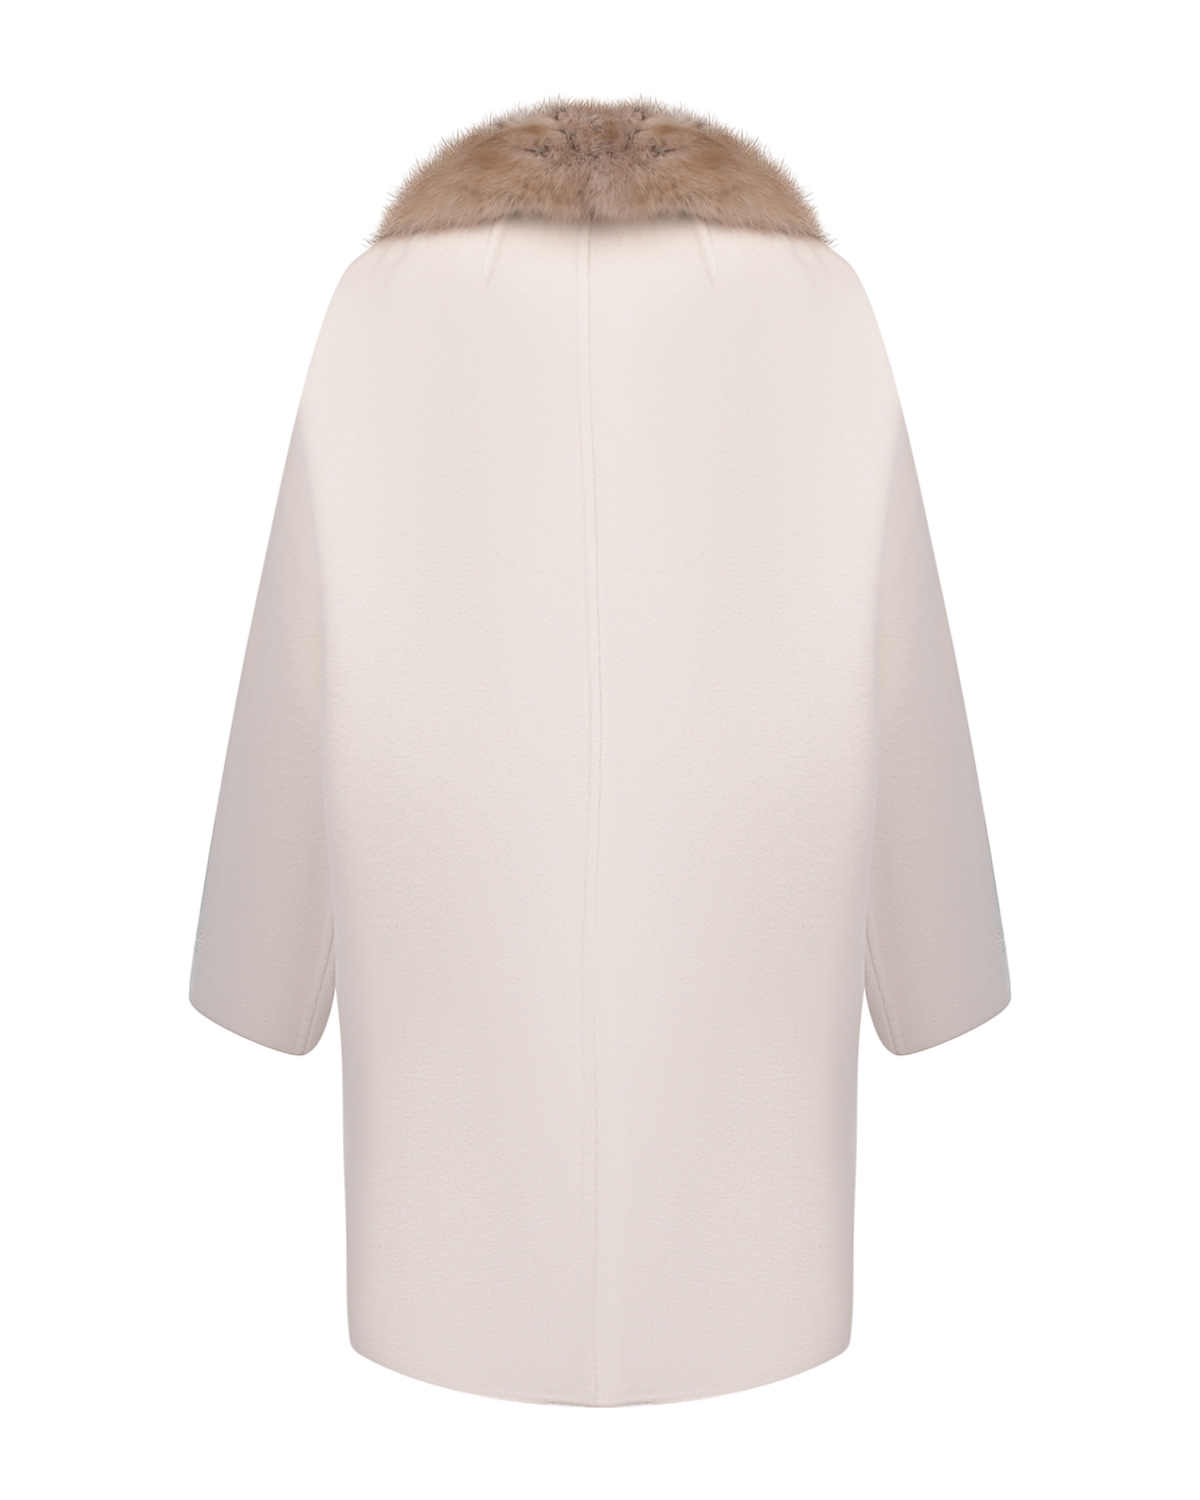 Кашемировое пальто с воротом из меха соболя Yves Salomon, размер 38, цвет нет цвета - фото 5